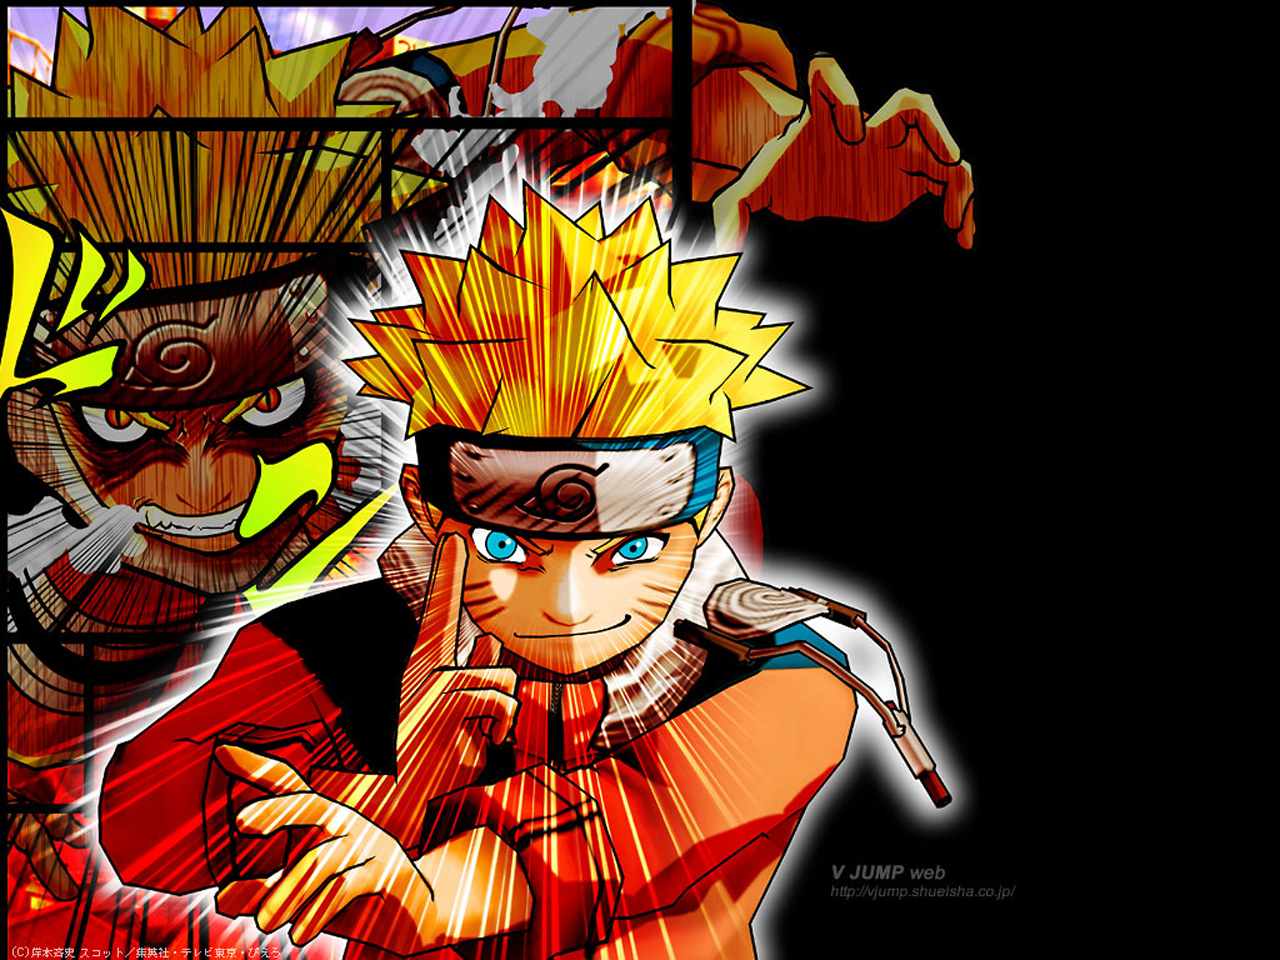 Naruto  Wallpapers legais de anime, Papel de parede anime, Anime